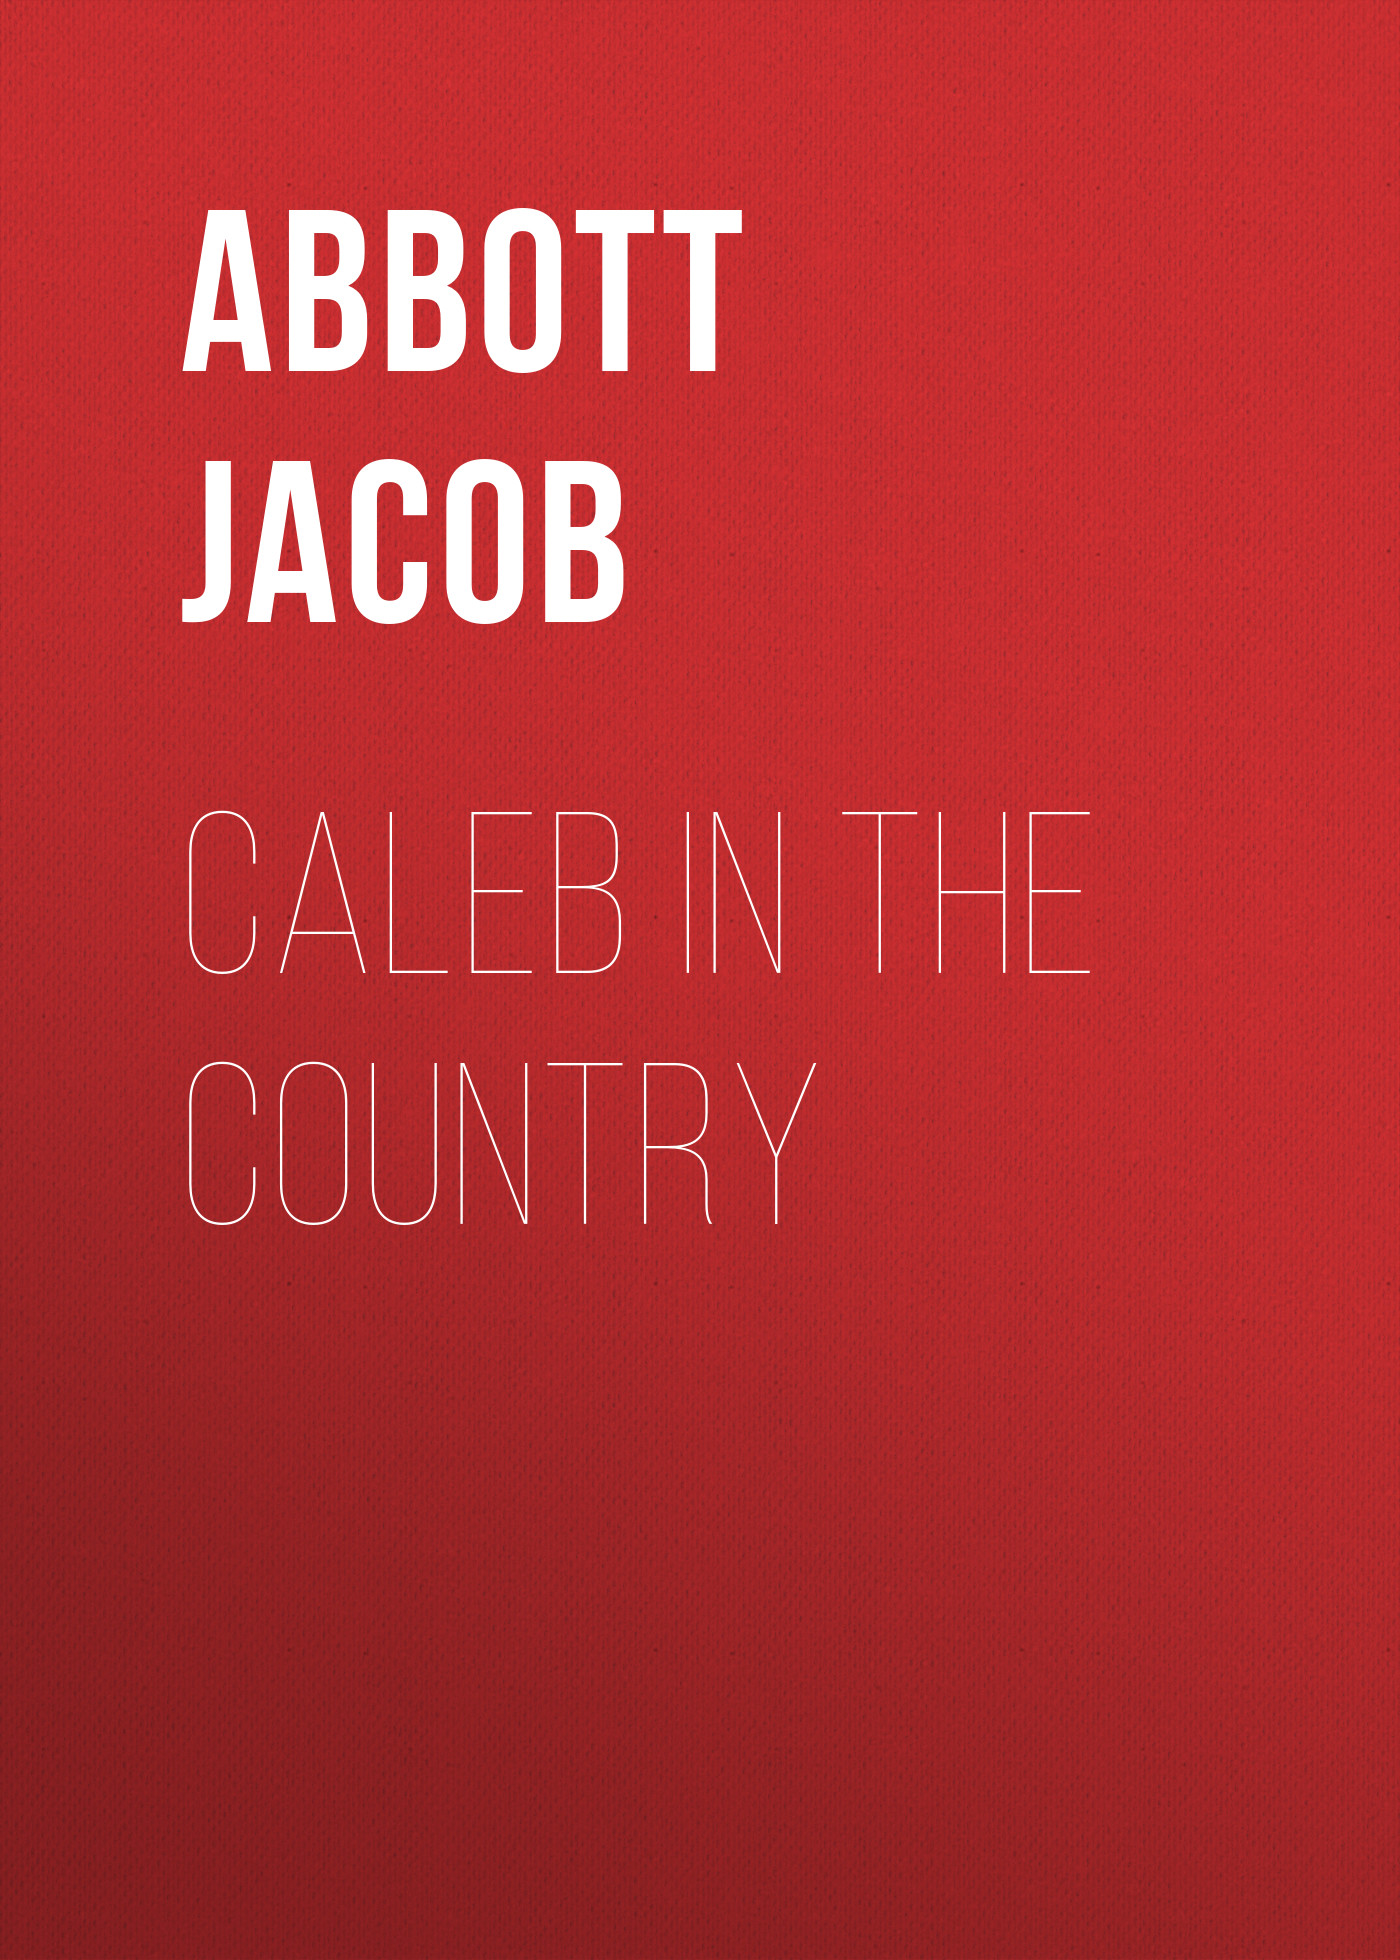 Книга Caleb in the Country из серии , созданная Jacob Abbott, может относится к жанру Зарубежные детские книги, Зарубежная старинная литература, Зарубежная классика. Стоимость электронной книги Caleb in the Country с идентификатором 36364182 составляет 0 руб.